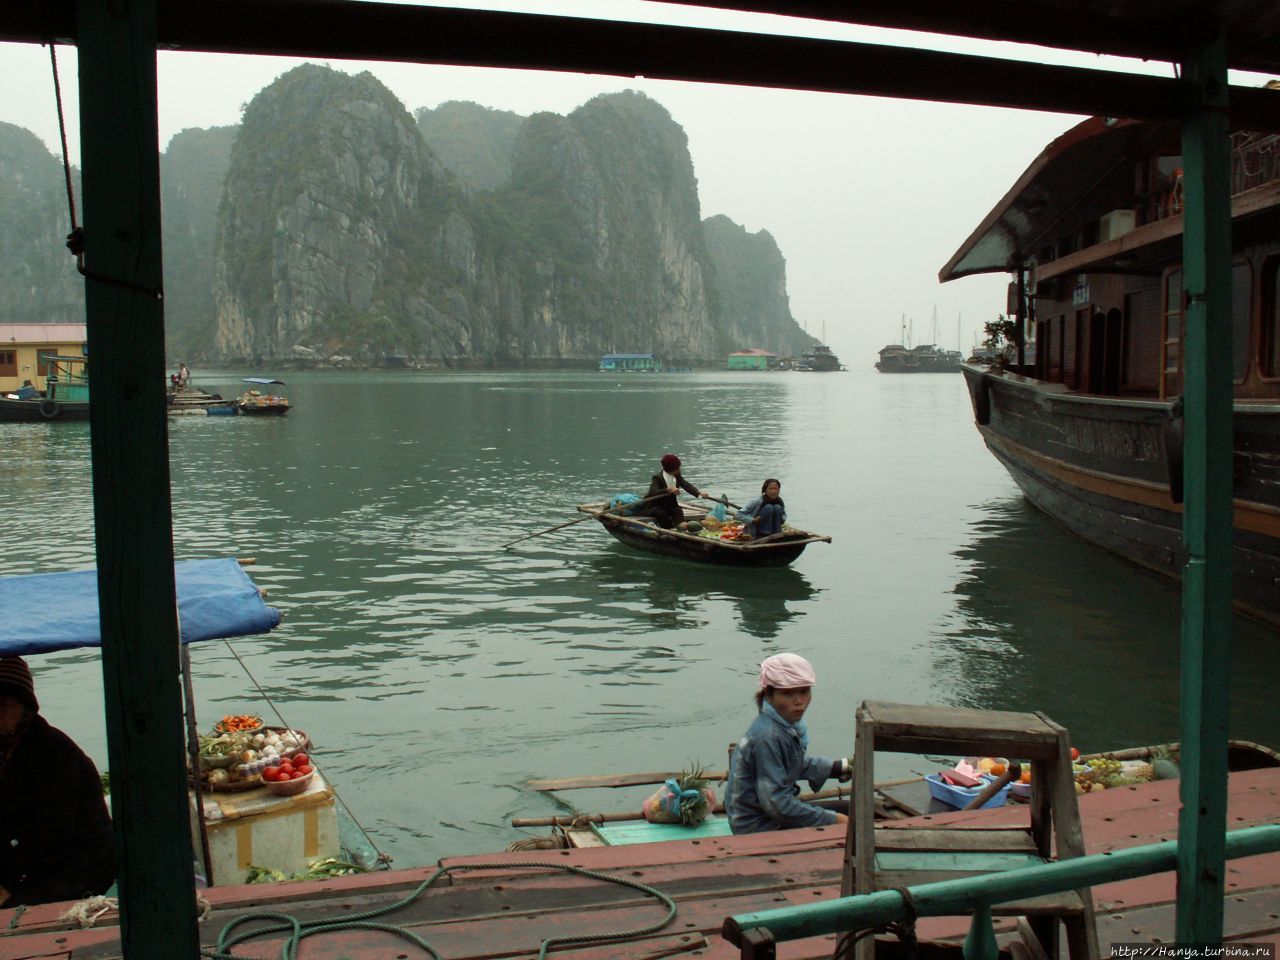 Бухта Халонг, пещерные гроты, плавучий рынок и обед. Часть 6 Халонг бухта, Вьетнам